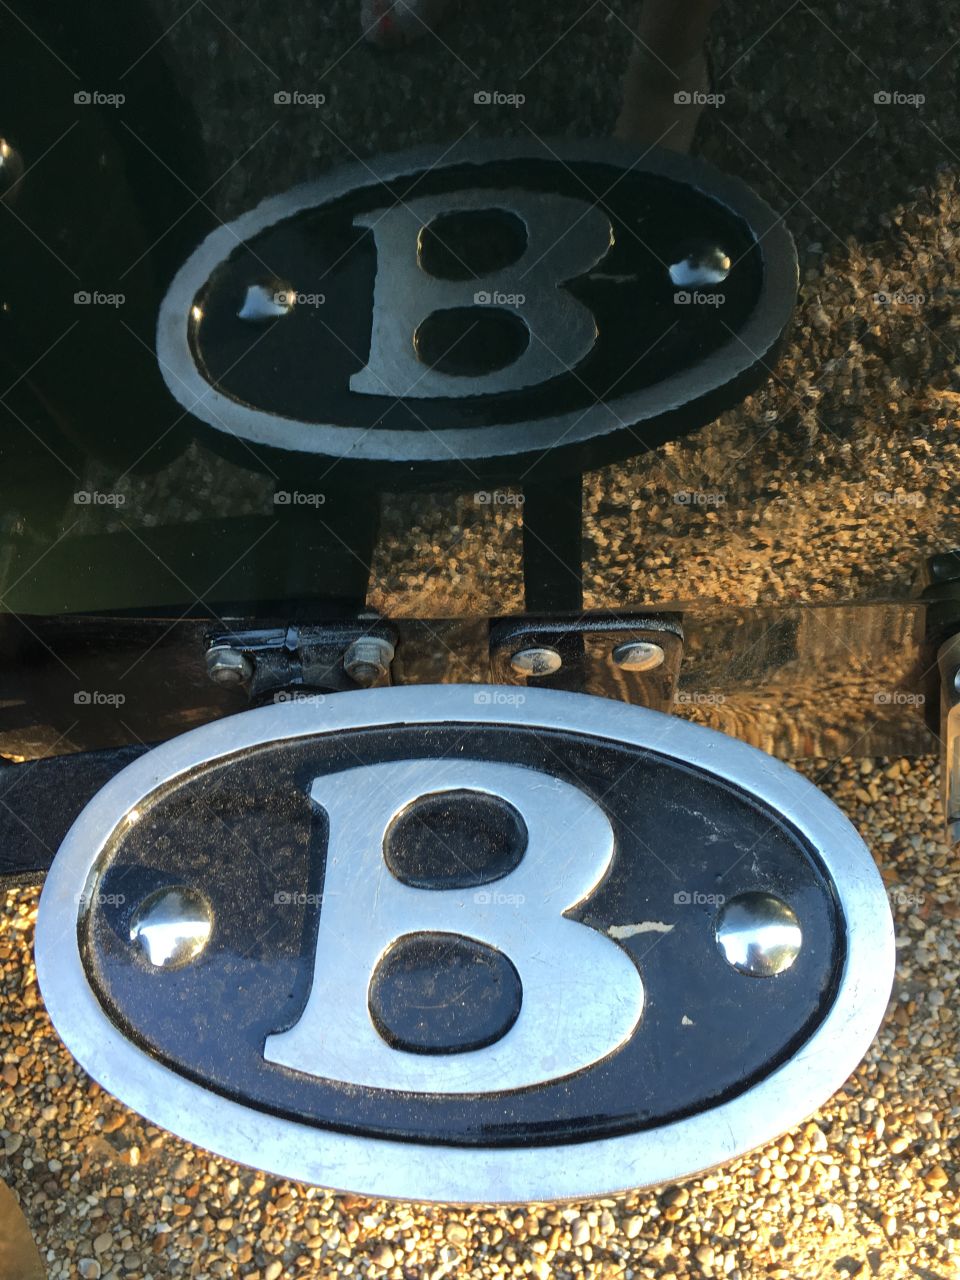 B for Bentley